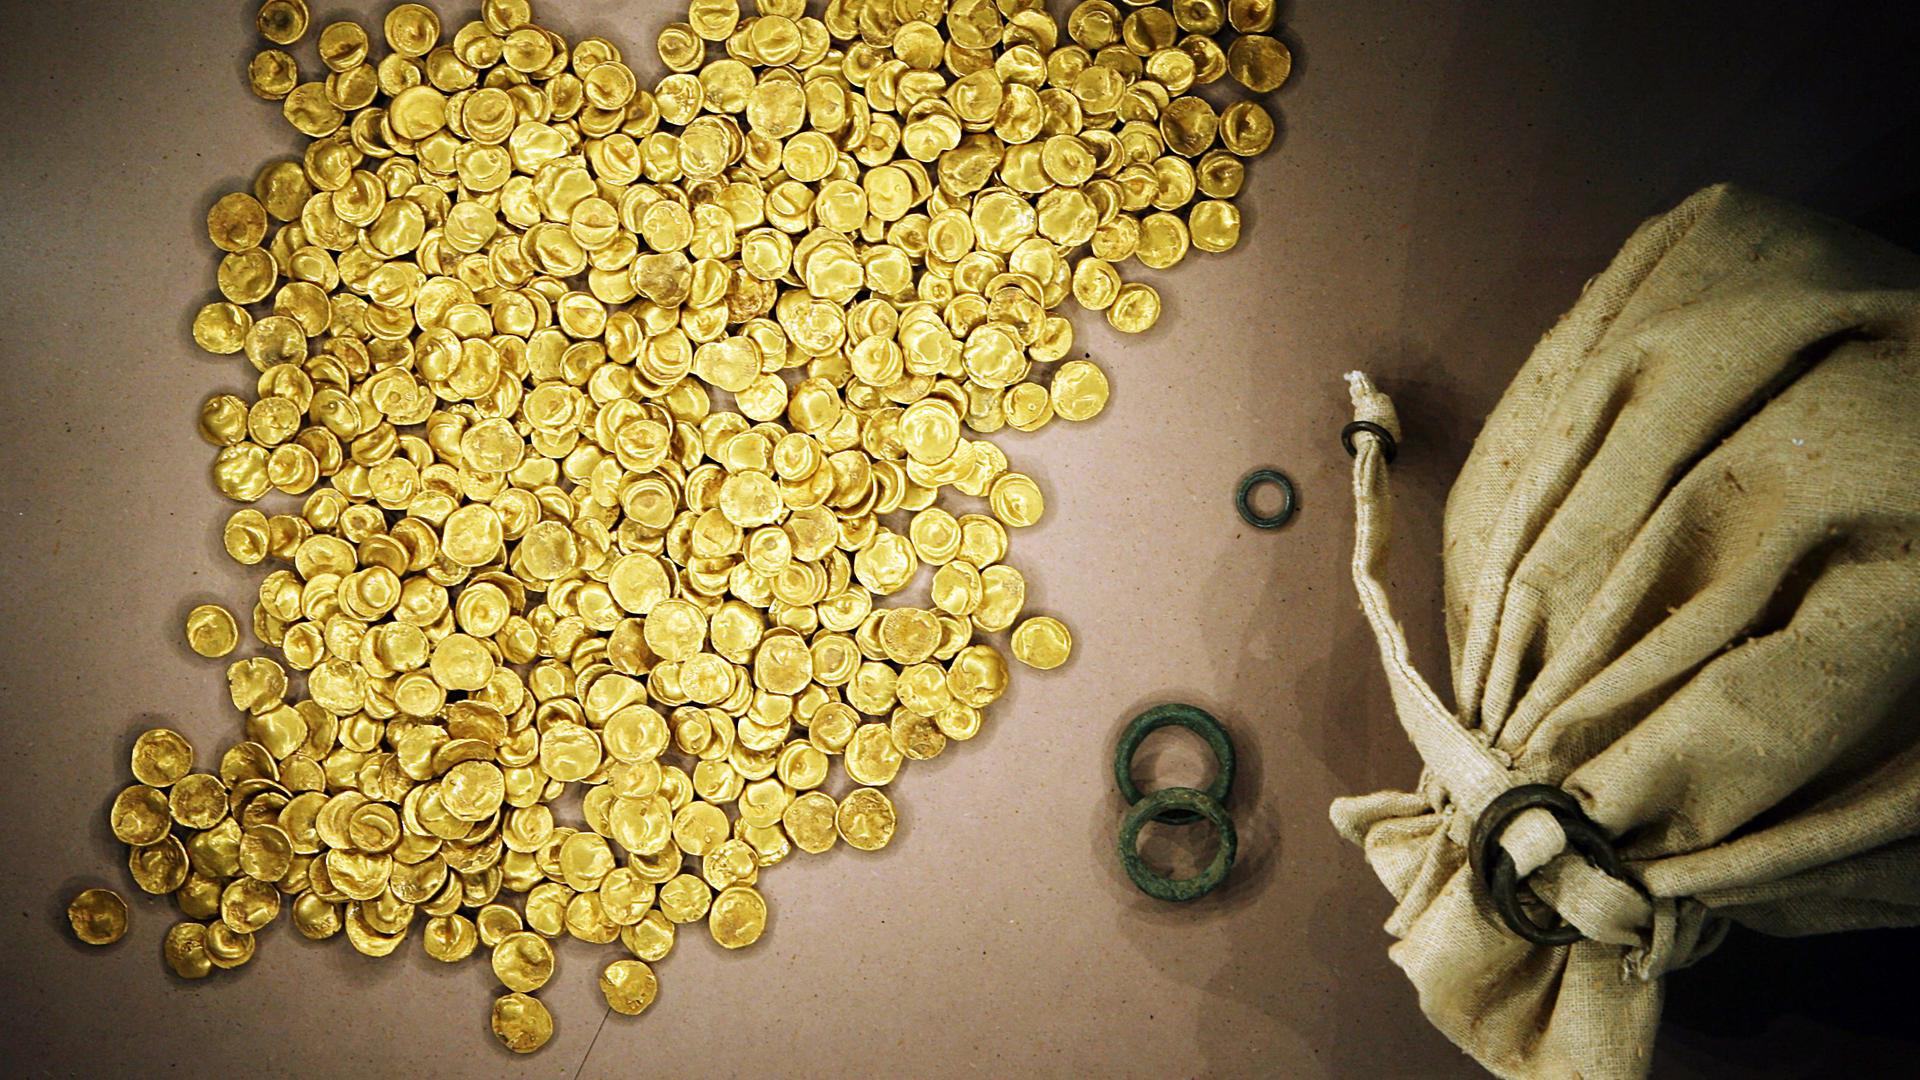 Viele Gold-Münzen liegen neben einem offenen Stoff-Beutel.